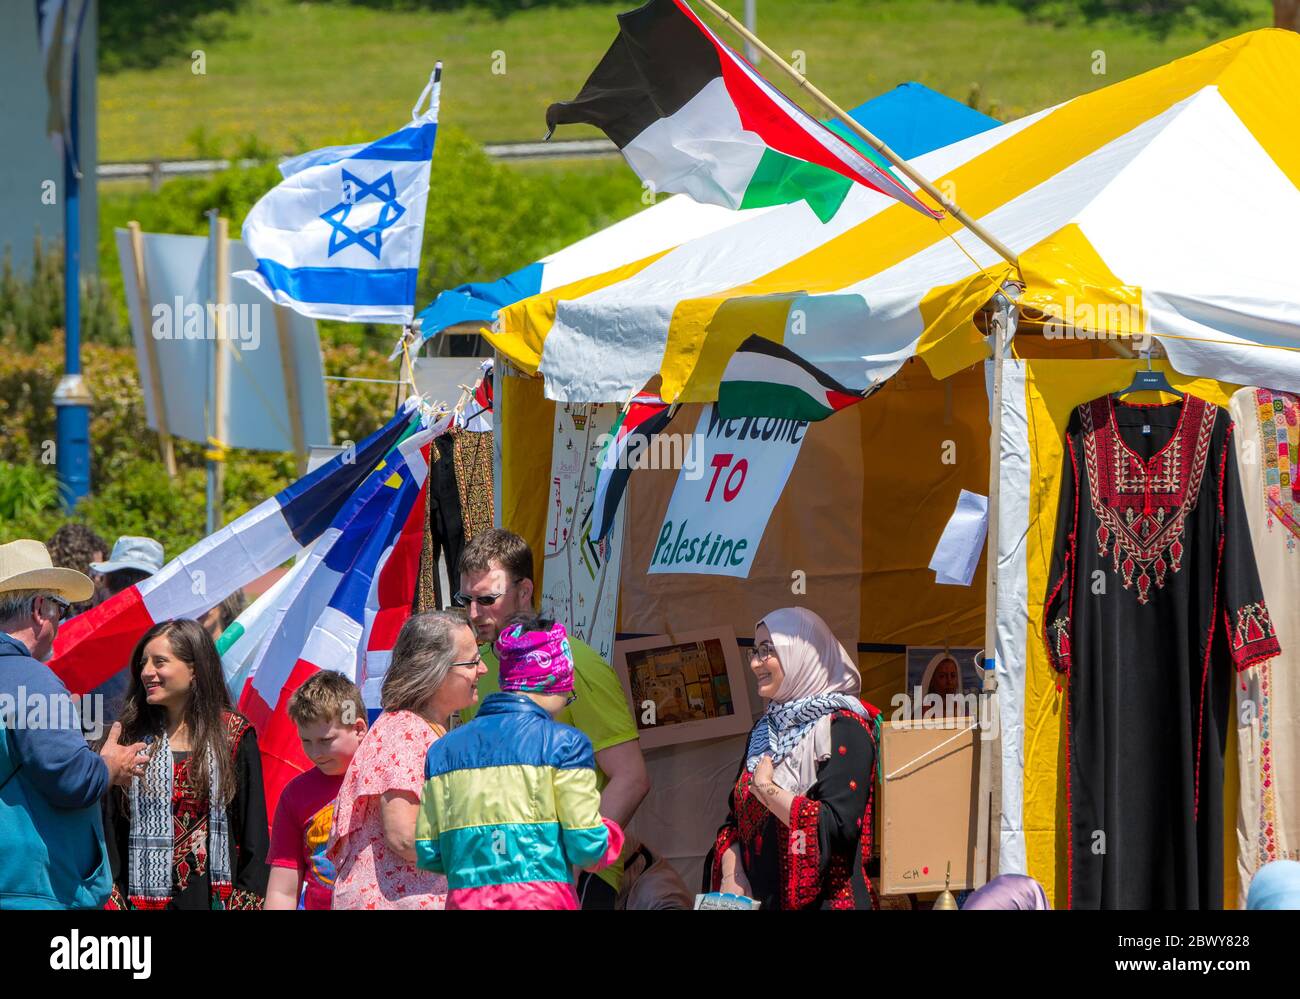 Saint John, Nouveau-Brunswick, Canada - 16 juin 2018 : Festival de la culture. Les gens se rassemblent à la tente palestinienne. Partie de la tente israélienne visible. Banque D'Images